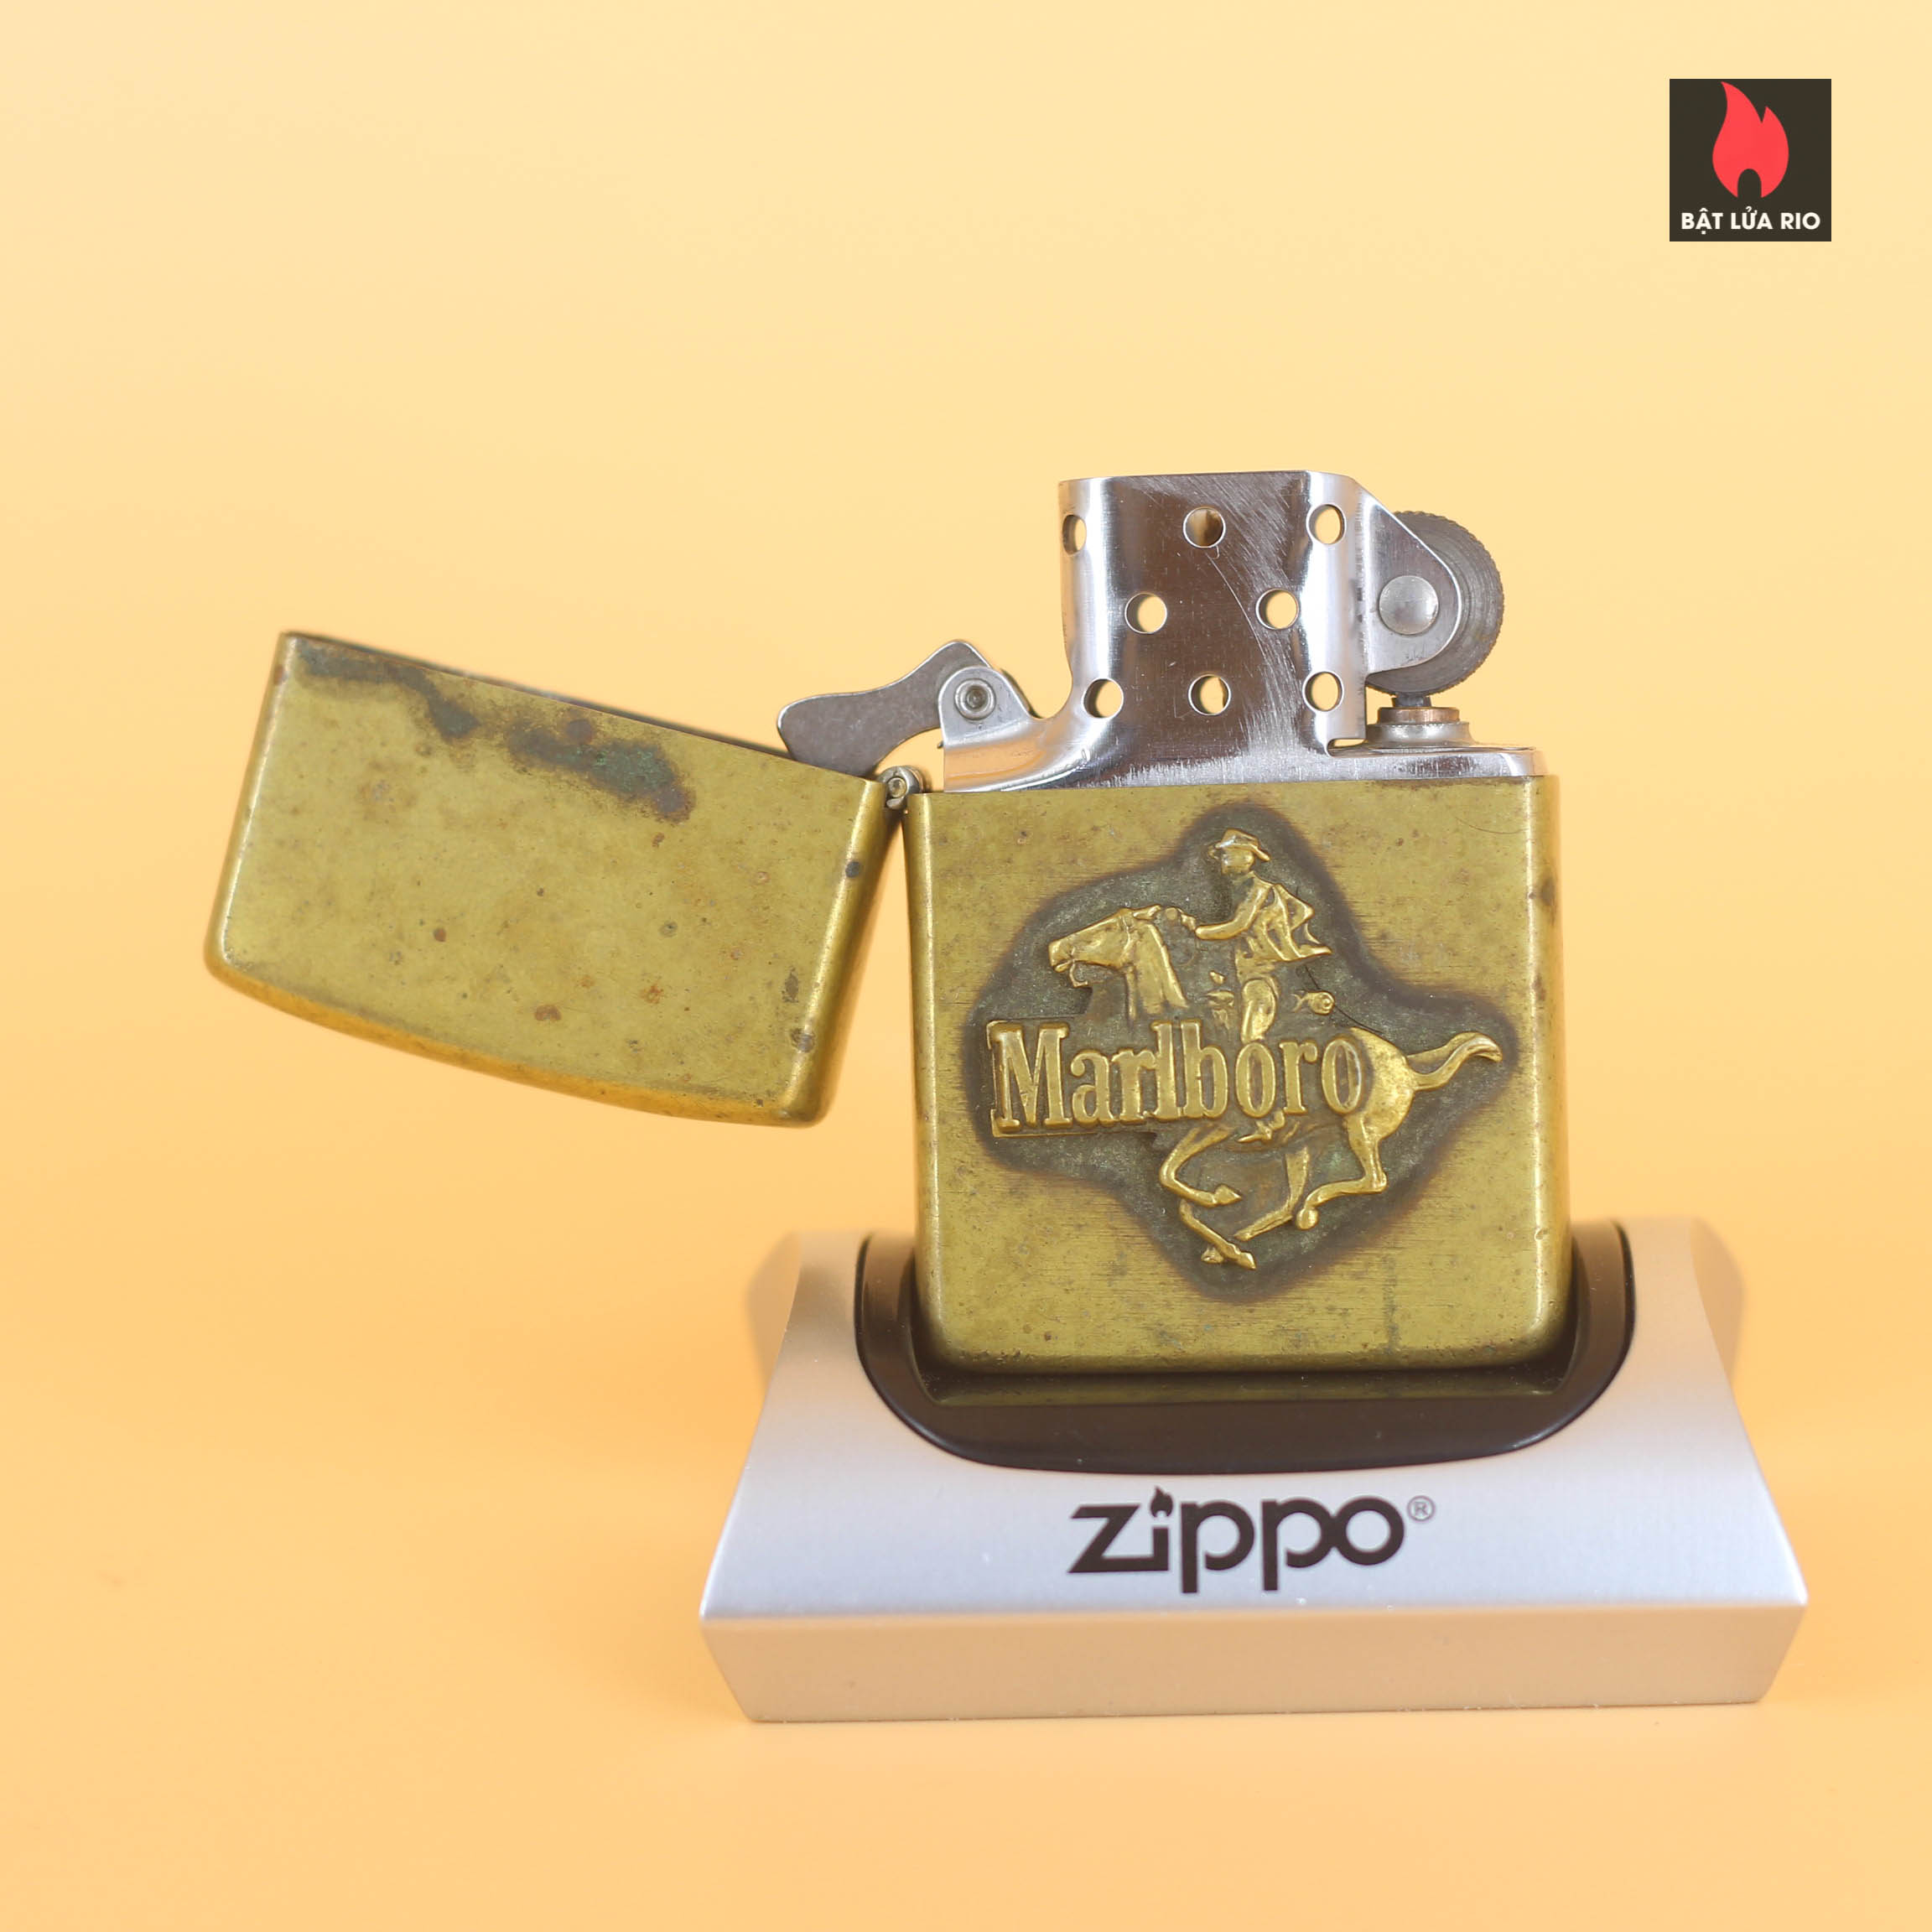 Zippo 1982 - Zippo Marlboro Running HorseMan 1982 - Solid Brass 18